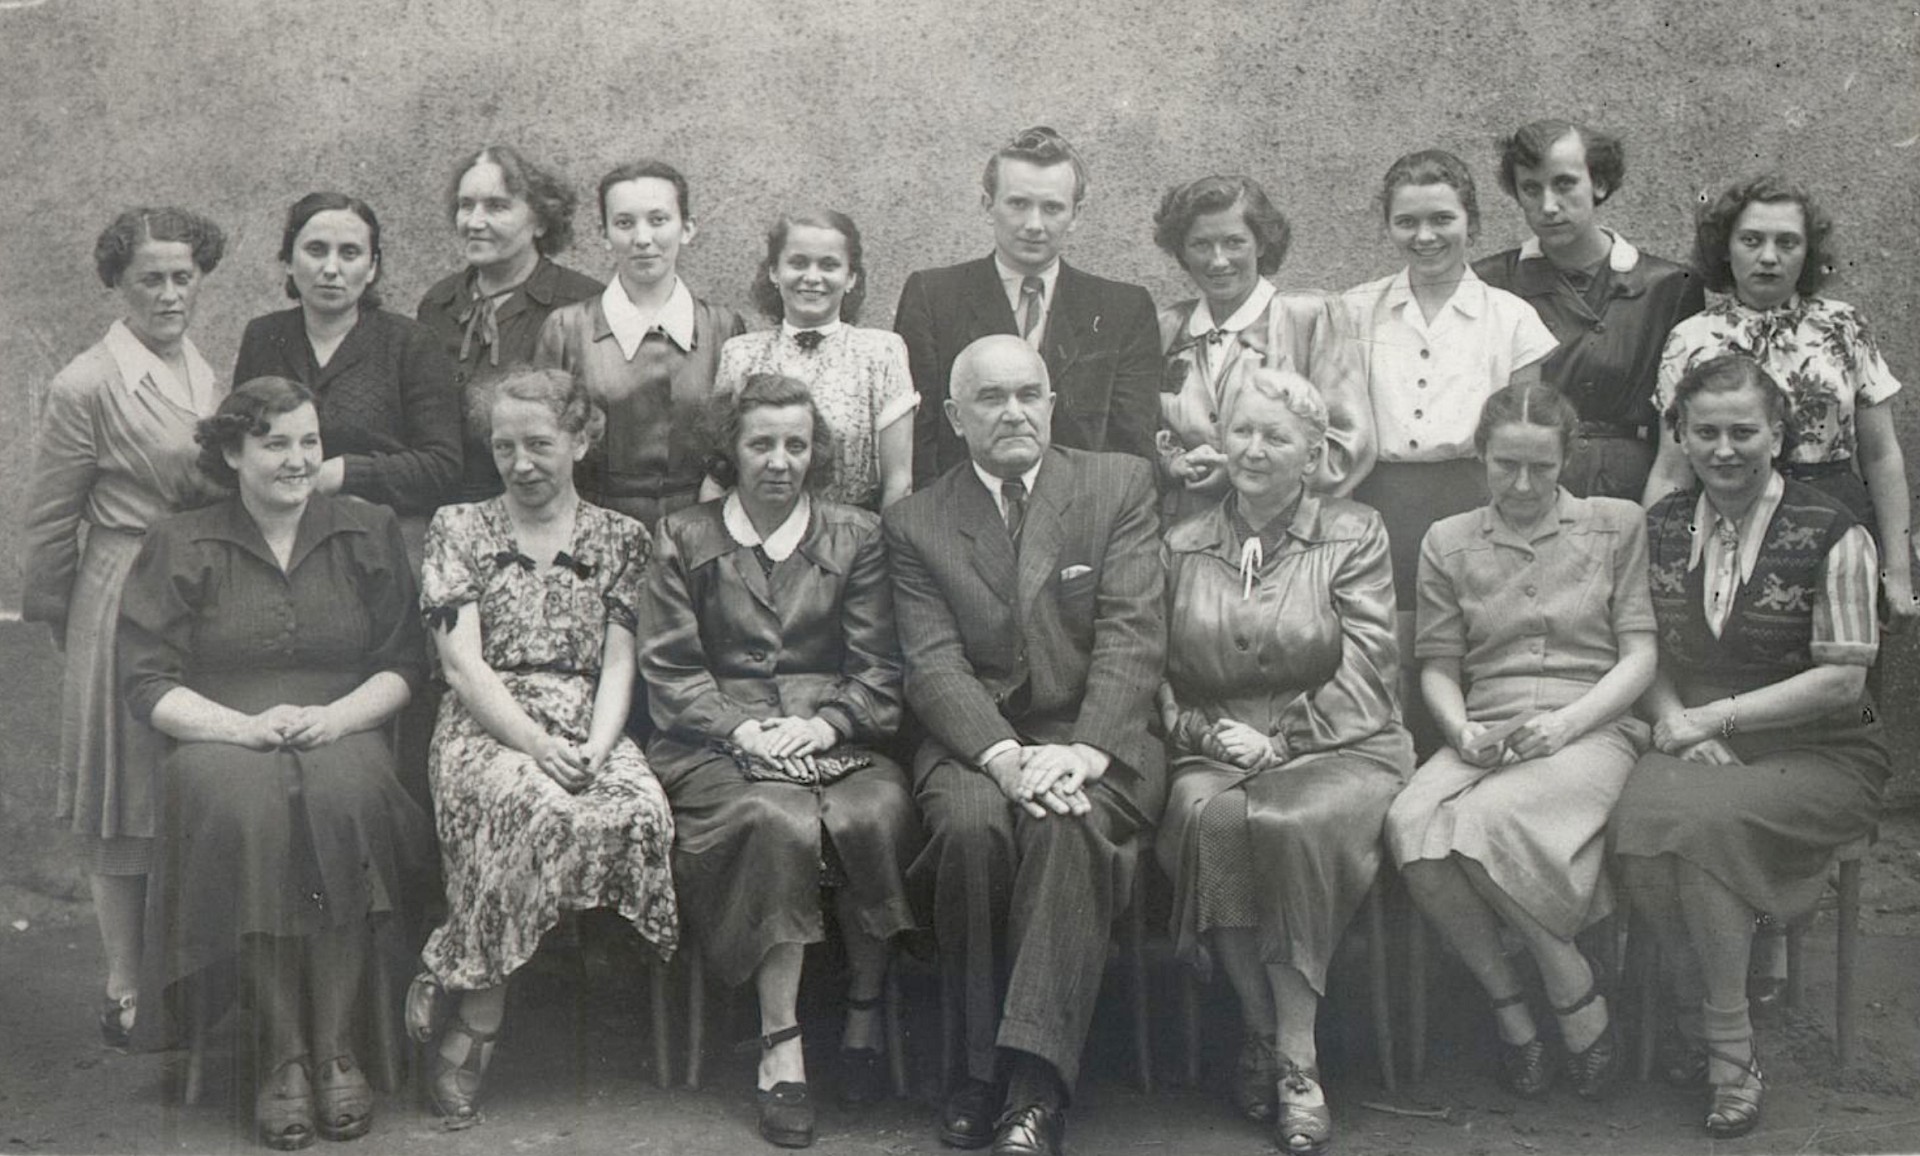 Grono pedagogiczne Szkoły Podstawowej Nr 54 w Giszowcu, lata 50-te XX wieku. Józef Piasecki siedzi pośrodku, trzecia z lewej stoi jego druga żona Stefania, druga z prawej siedzi jego przyszła trzecia żona Stanisława.